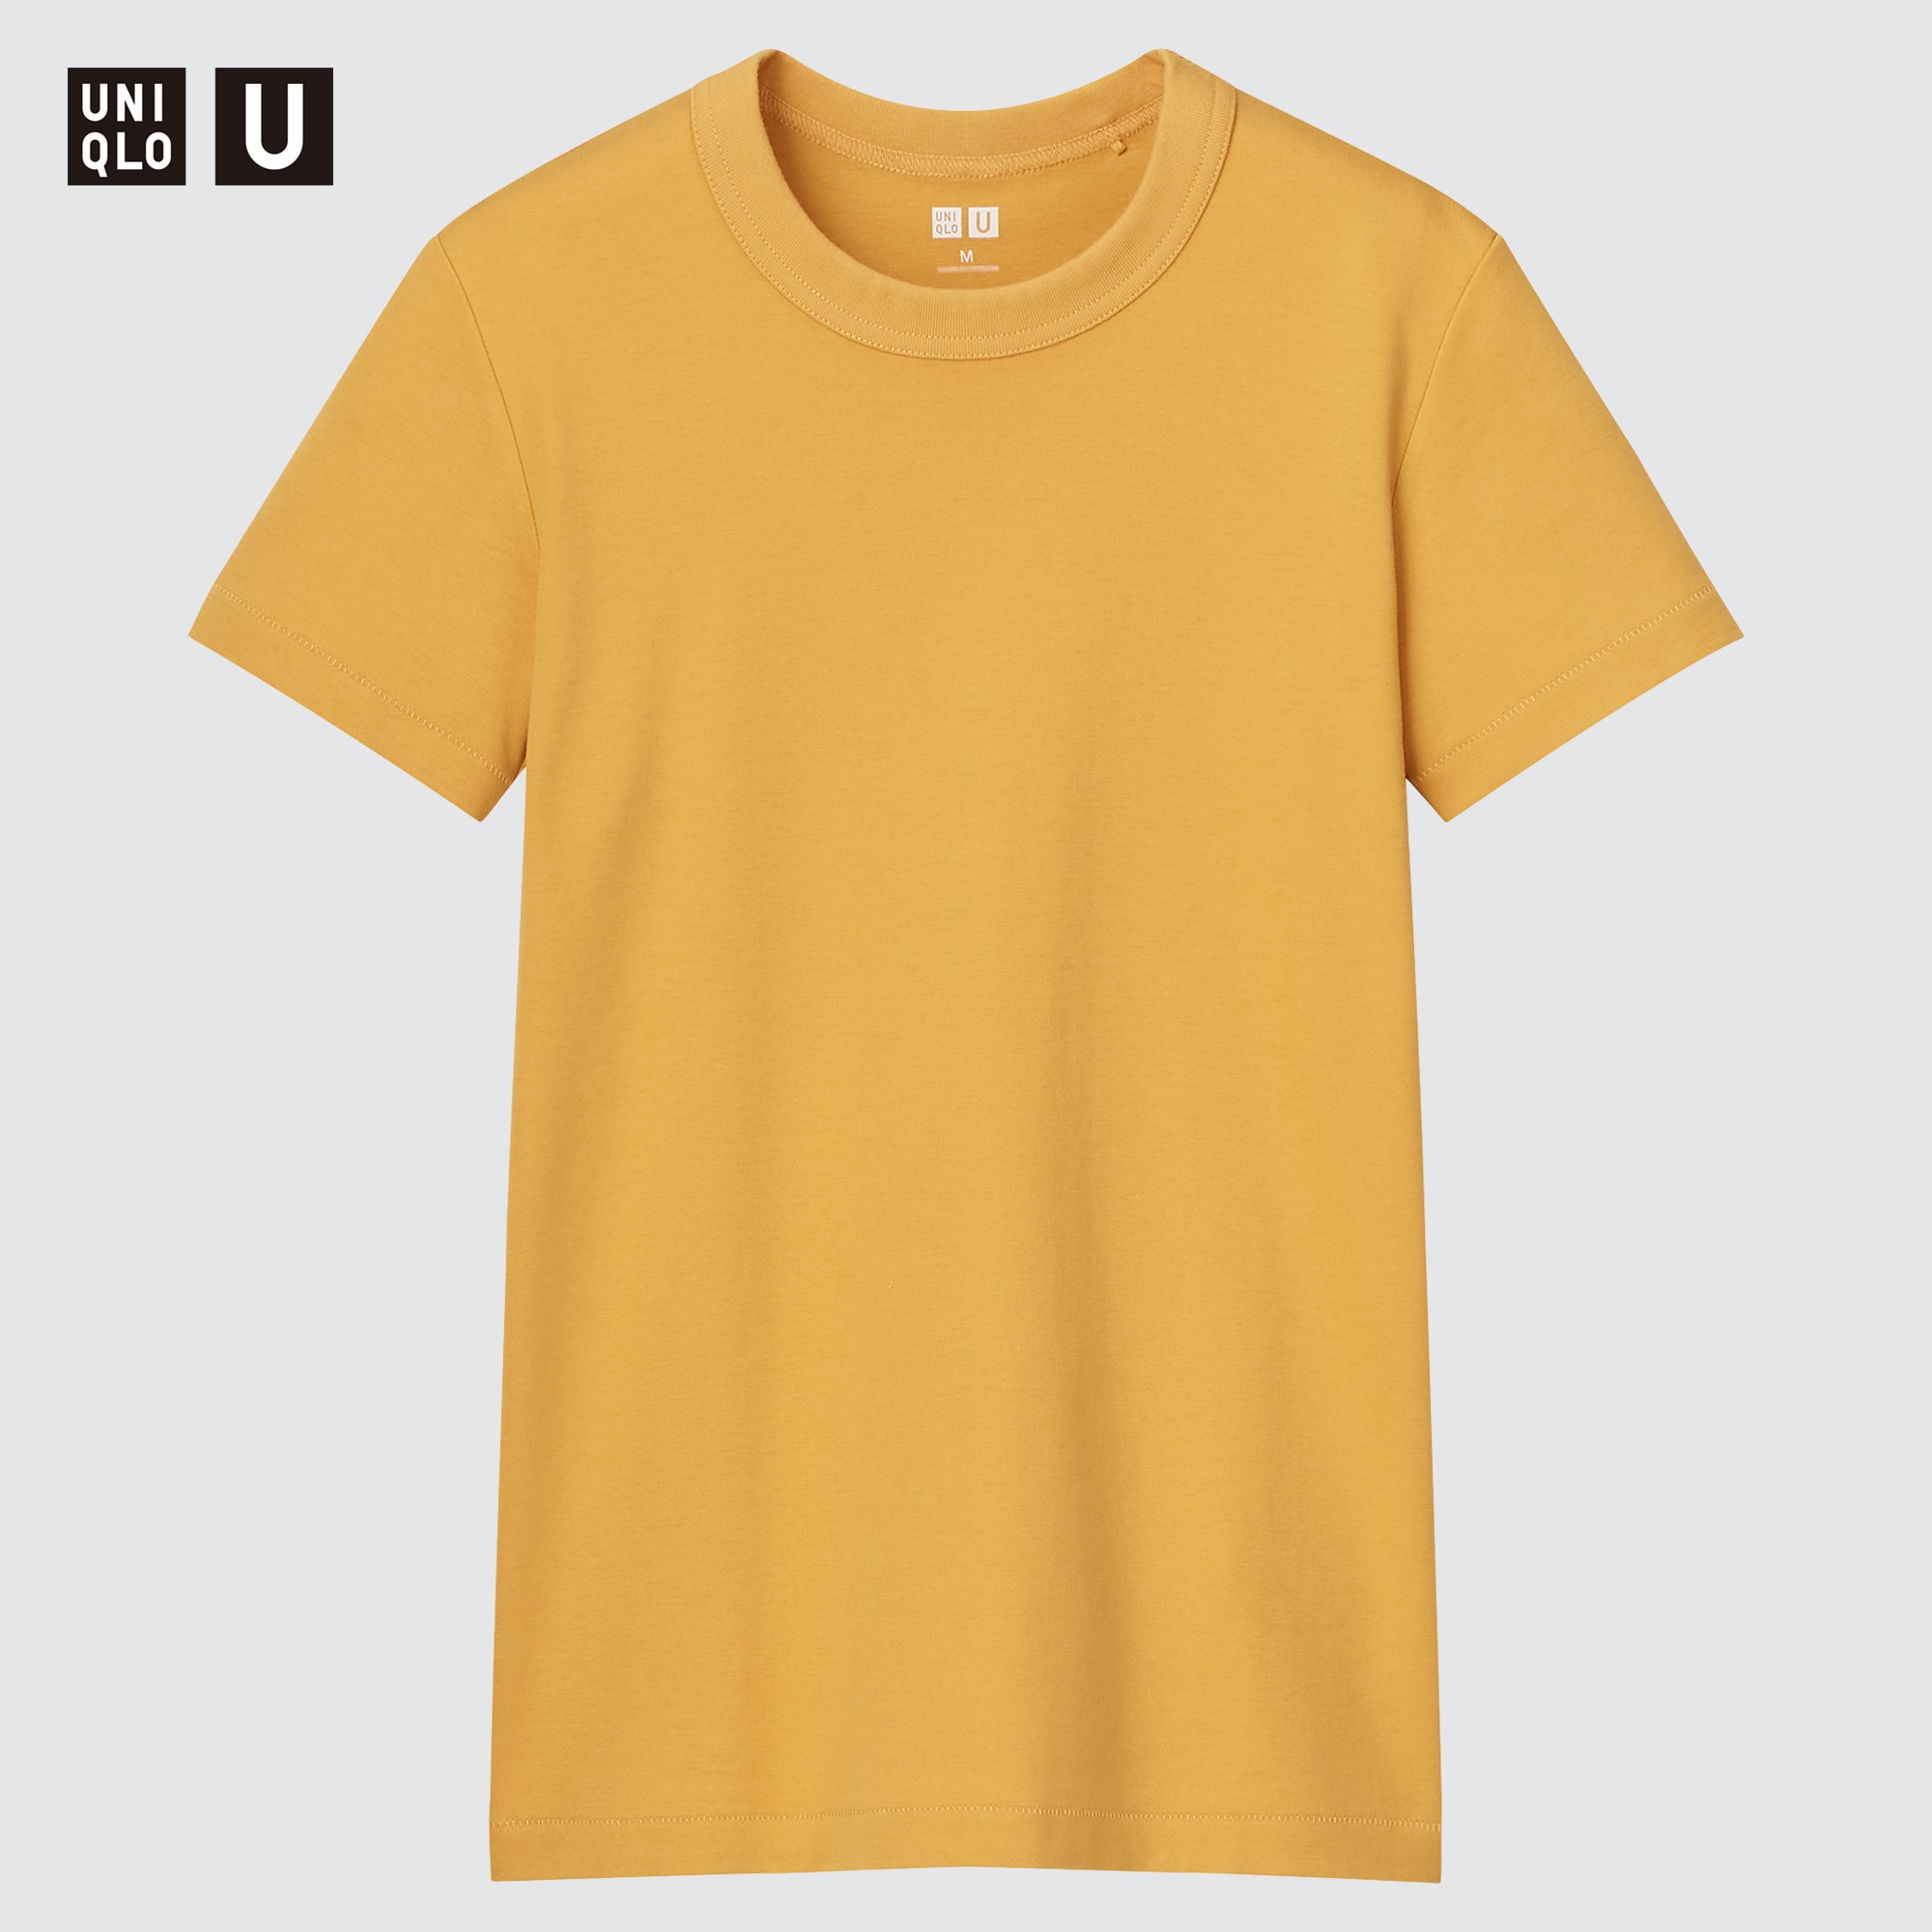 mustard yellow t shirt women's